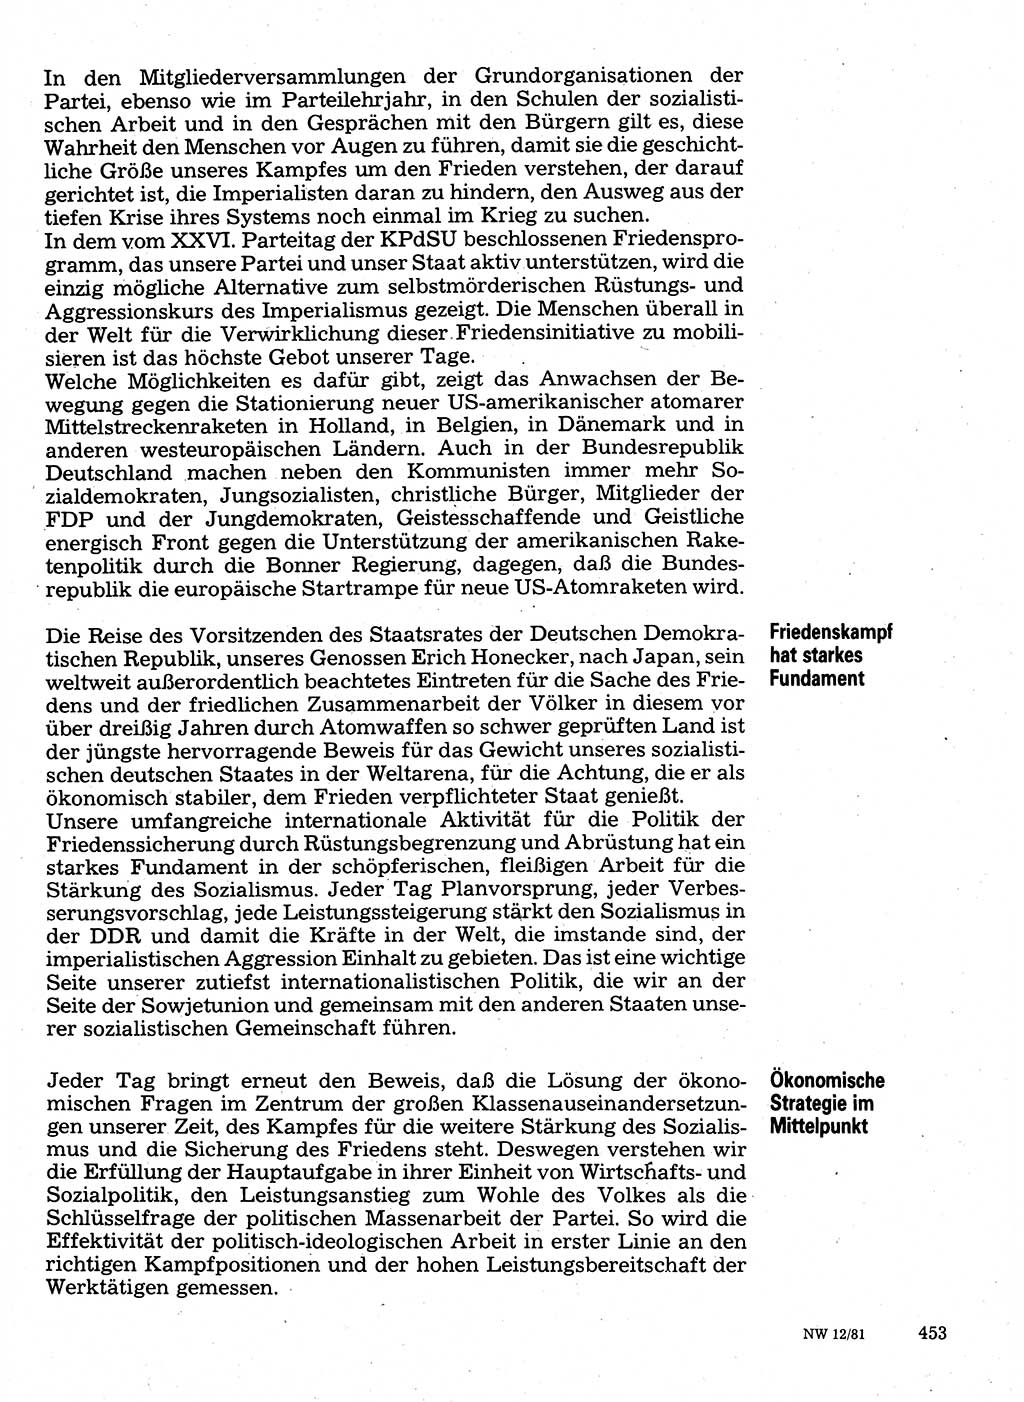 Neuer Weg (NW), Organ des Zentralkomitees (ZK) der SED (Sozialistische Einheitspartei Deutschlands) für Fragen des Parteilebens, 36. Jahrgang [Deutsche Demokratische Republik (DDR)] 1981, Seite 453 (NW ZK SED DDR 1981, S. 453)